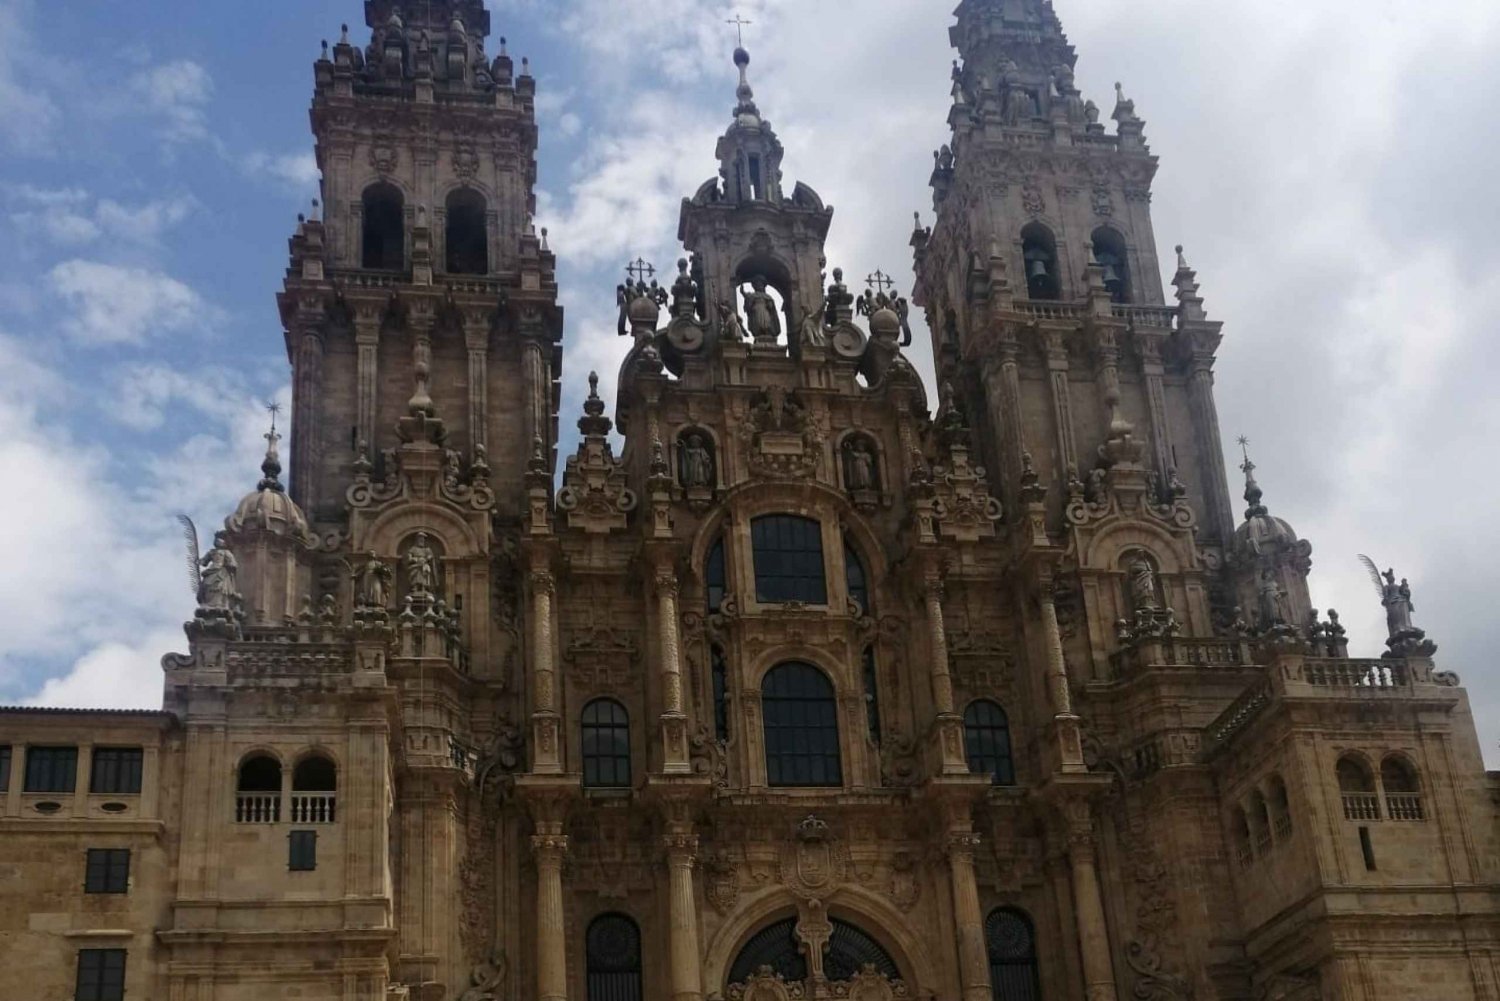 Santiago of Compostelan pyhiinvaellusmatka yksityinen kaikki sisältyy hintaan